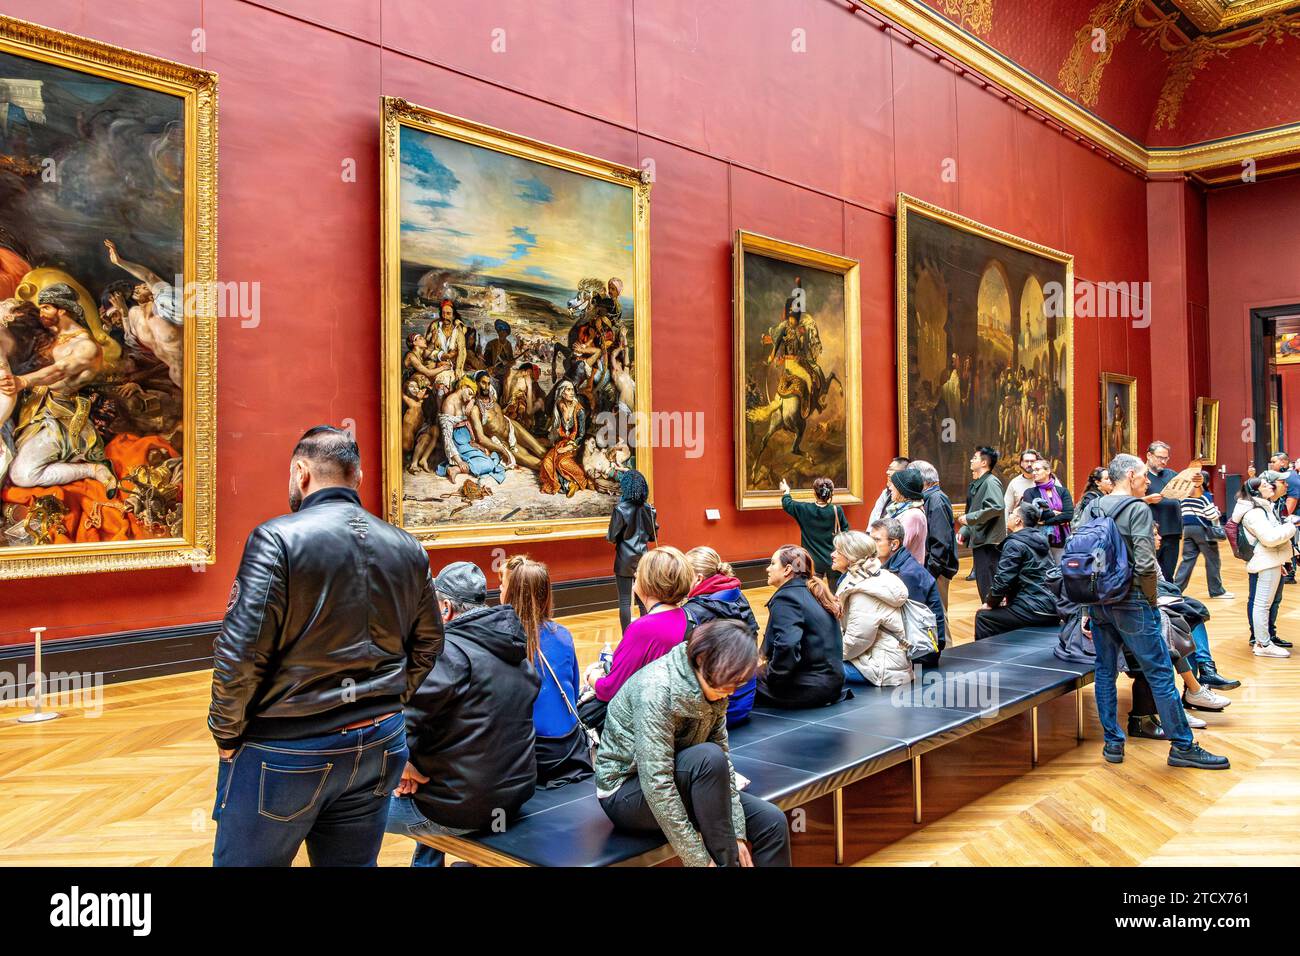 Les gens regardant les grandes peintures Frech hun dans les chambres rouges dans l'aile Denon du Louvre, Paris France Banque D'Images